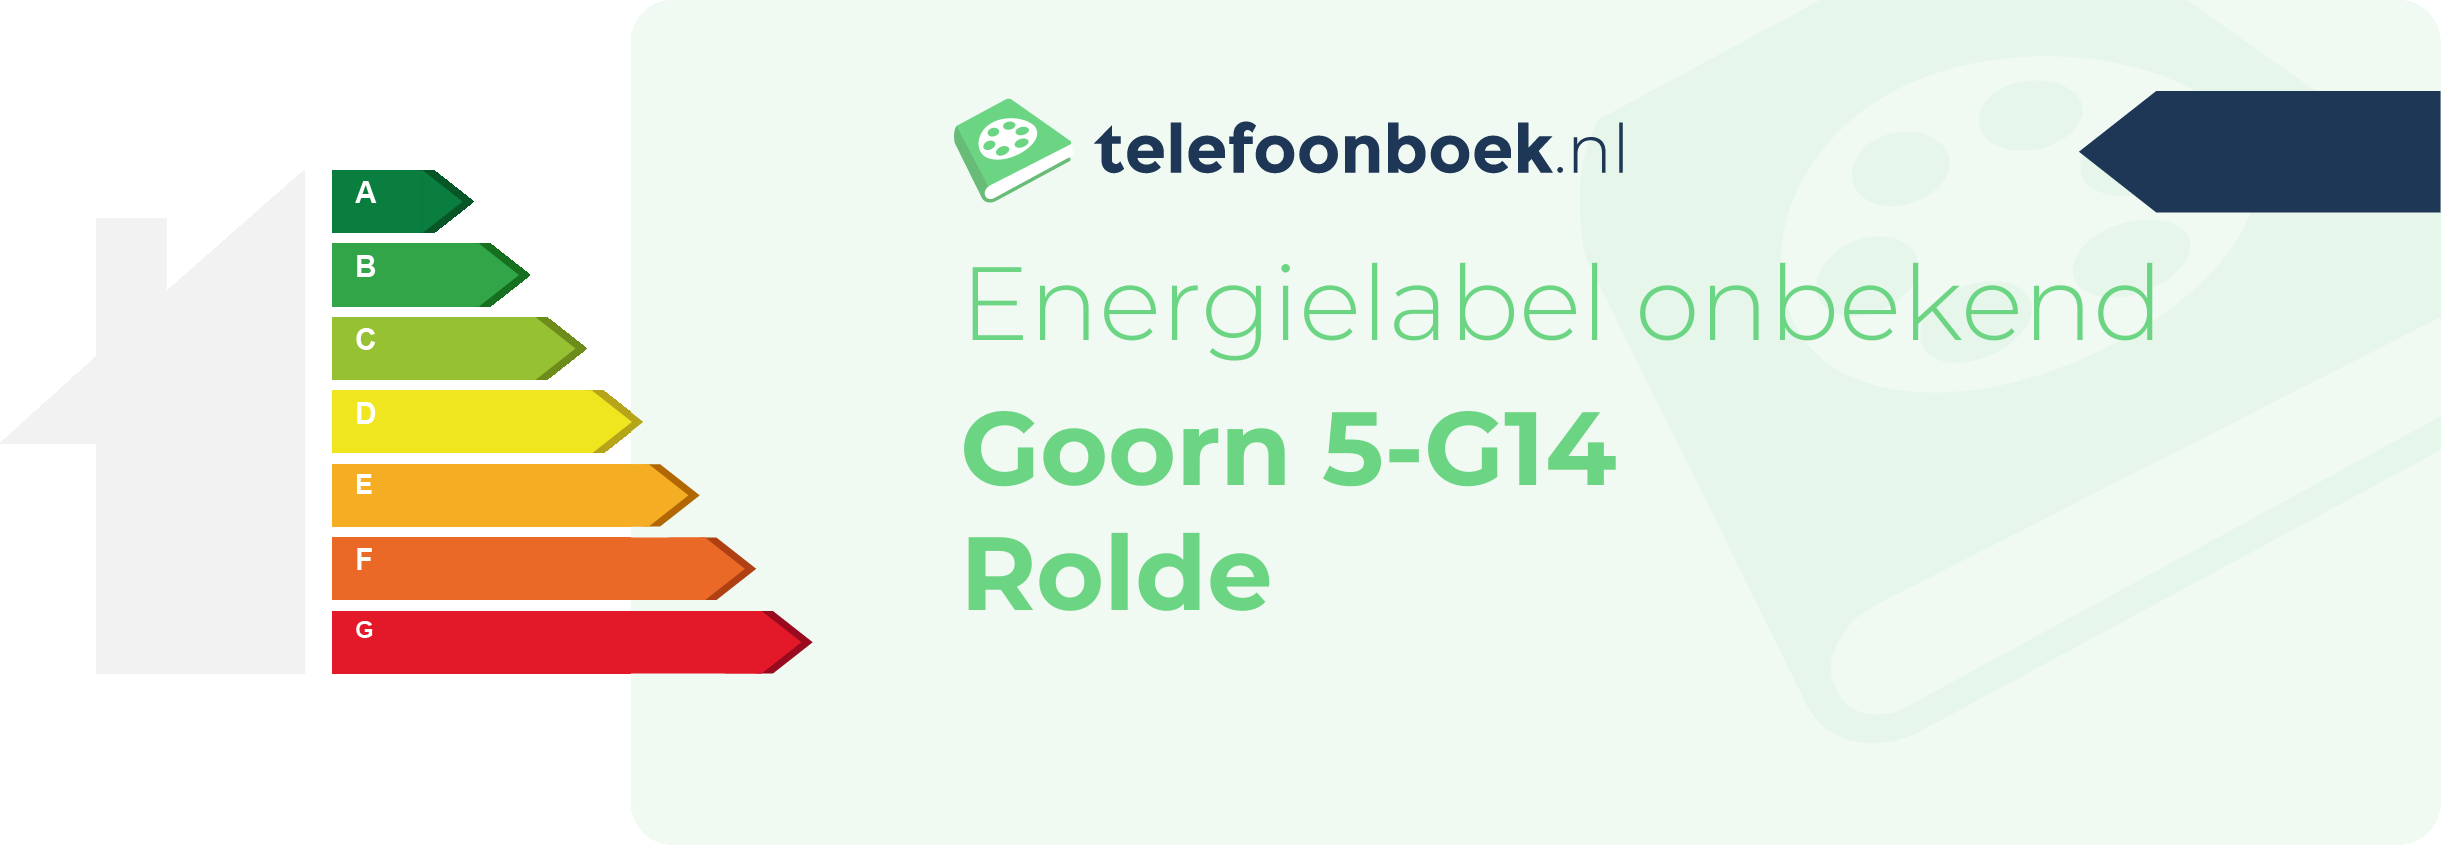 Energielabel Goorn 5-G14 Rolde